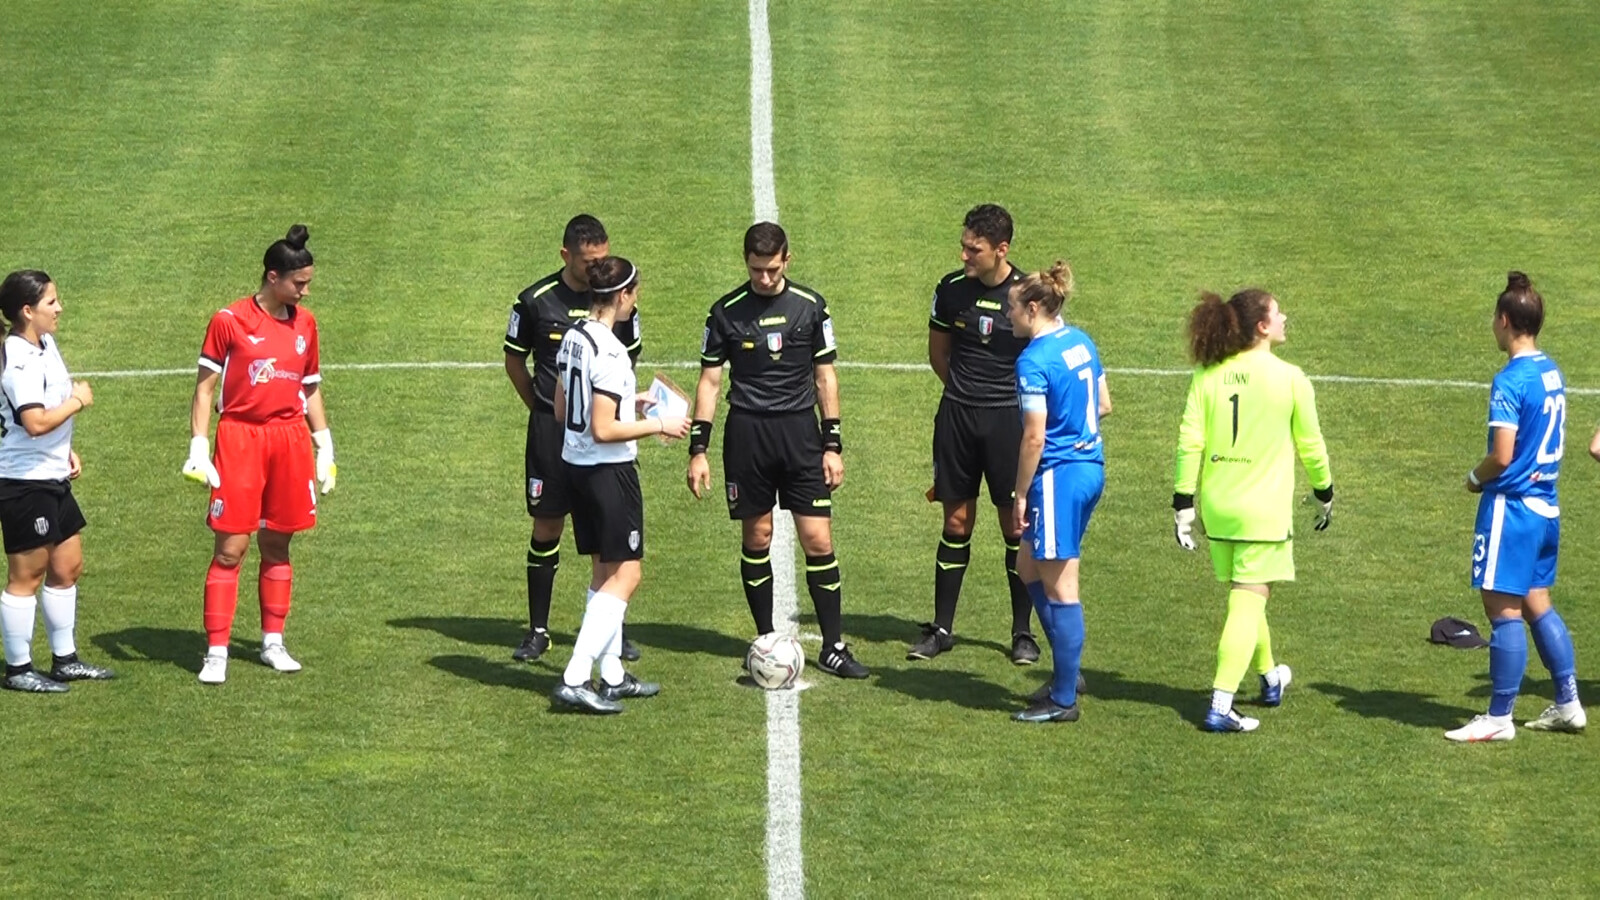 Cesena-Brescia 1-1: il match report